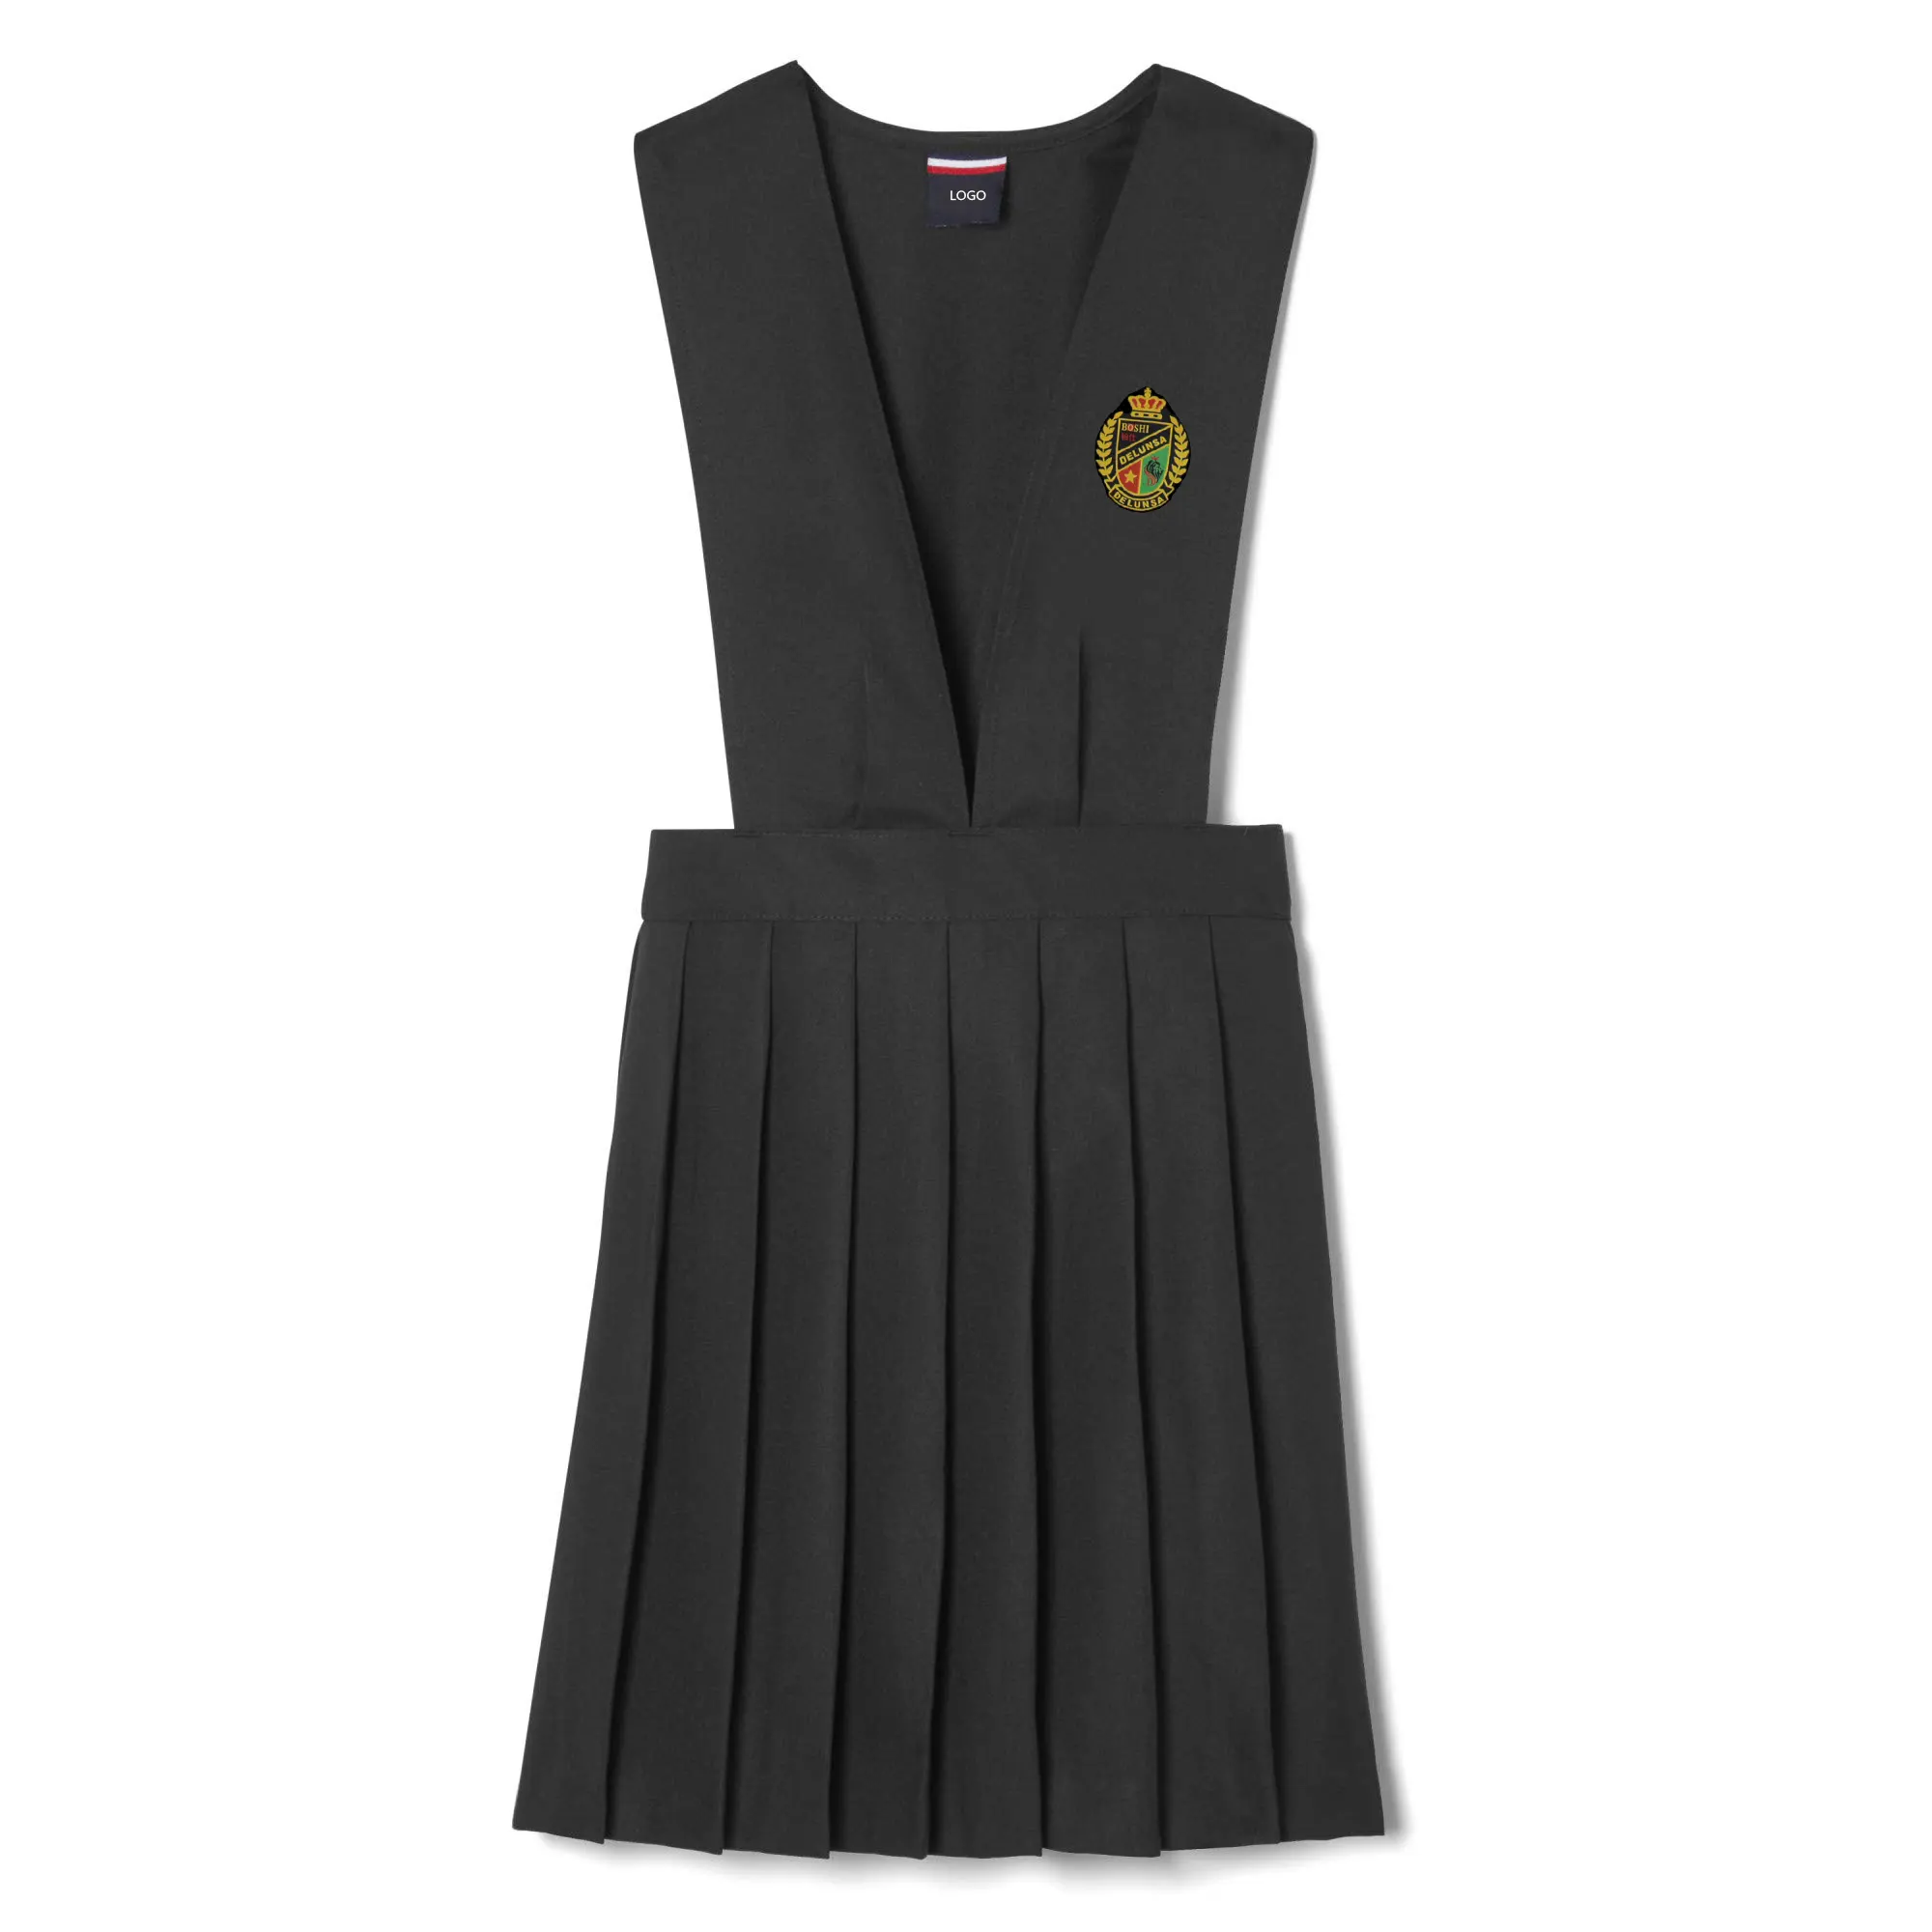 Preço de fábrica design personalizado uniformes do ensino médio primário para meninas escola pinafore vestido